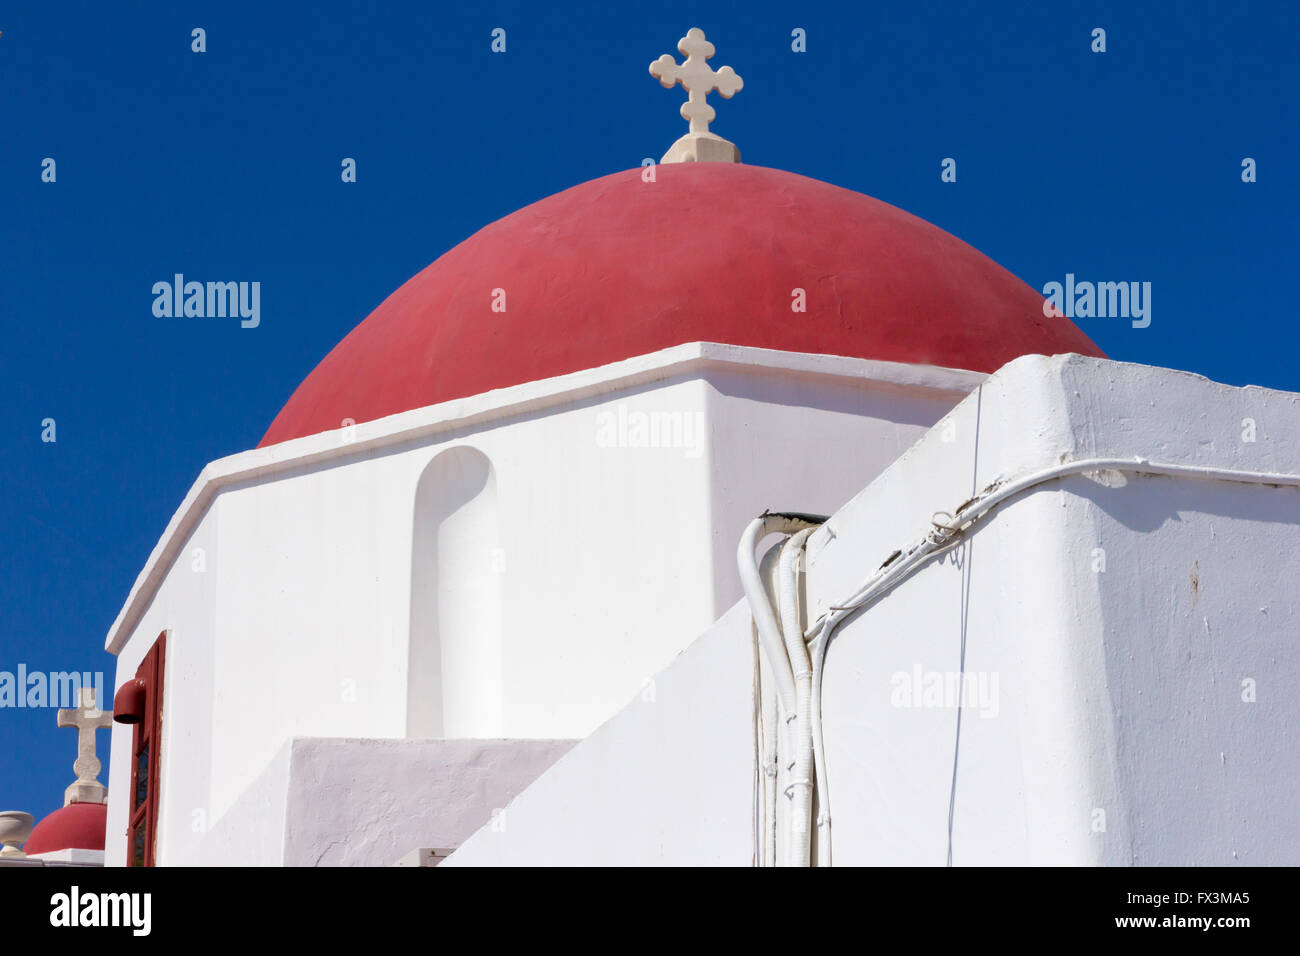 Ome rouge sur l'Eglise à Mykonos, Grèce Banque D'Images